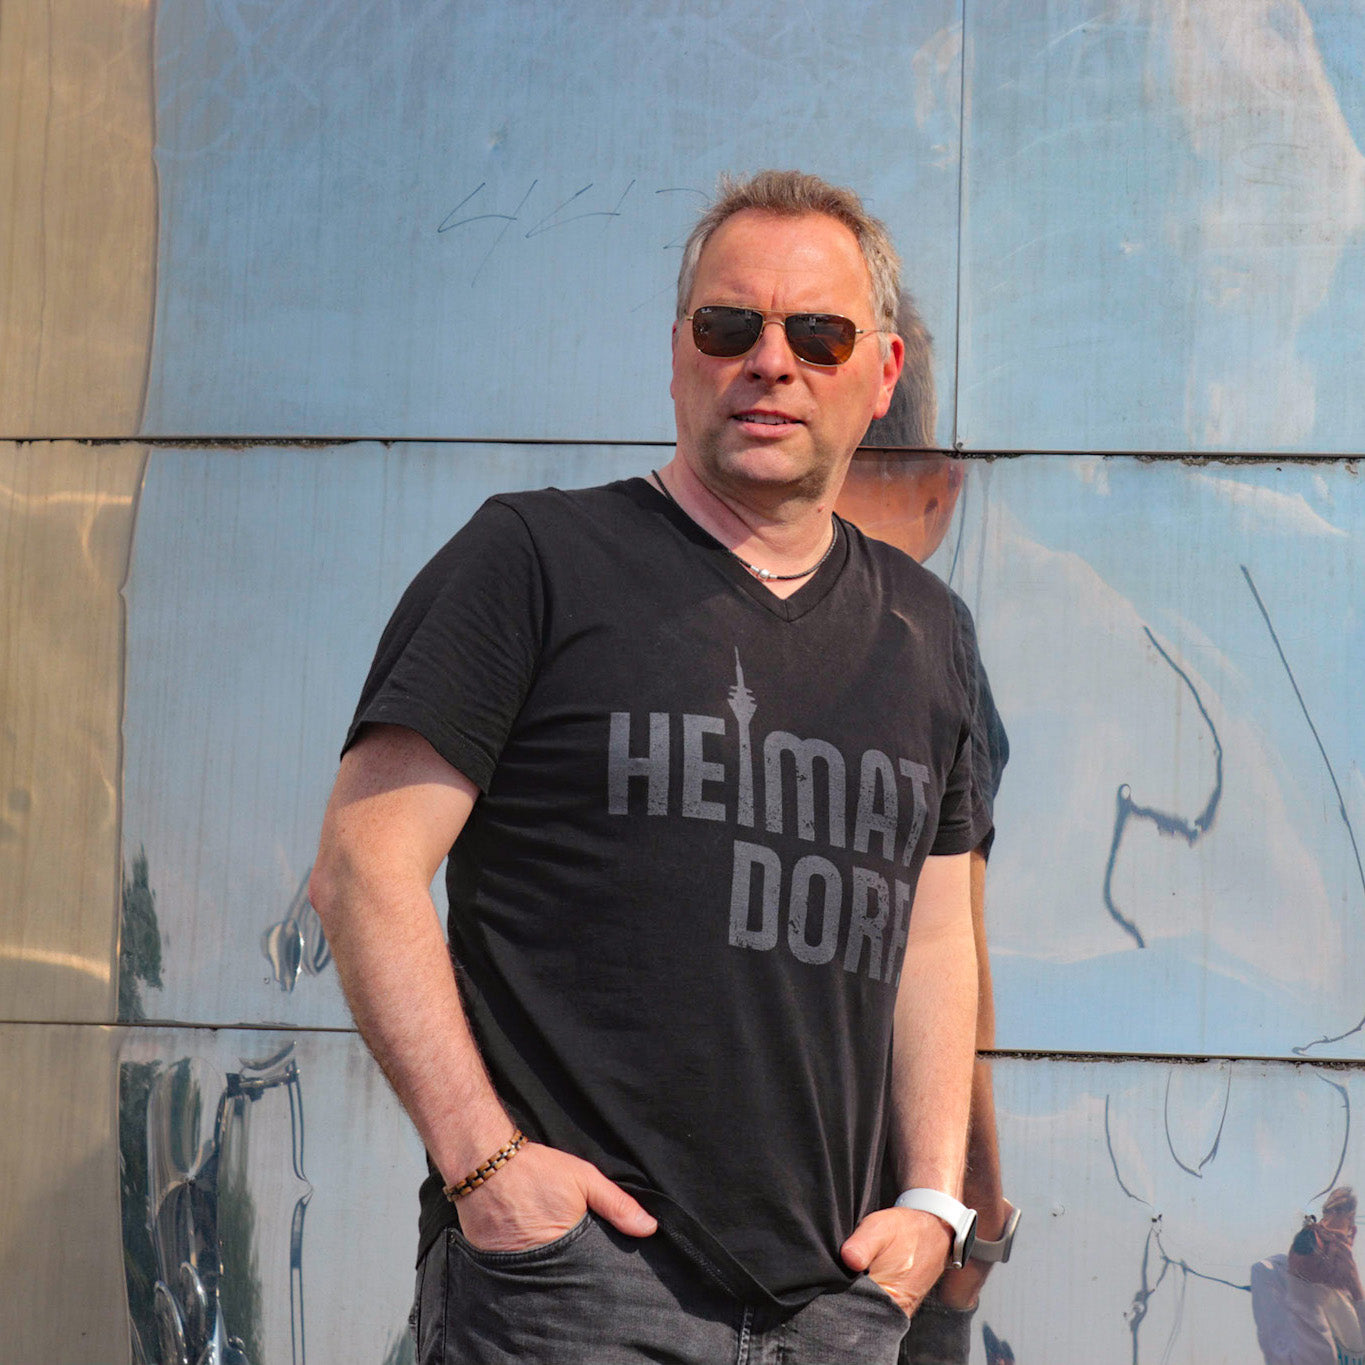 Mann lehnt im Düsseldorfer Medienhafen an einem der Gehry-Häuser. Der Mann trägt ein schwarzes T-Shirt mit V-Ausschnitt. Das Shirt ist in groß mit einem grauen Heimatdorf Schriftzug bedruckt. Der Buchstabe i in Heimatdorf ist durch den stilisierten Rheinturm dargestellt.